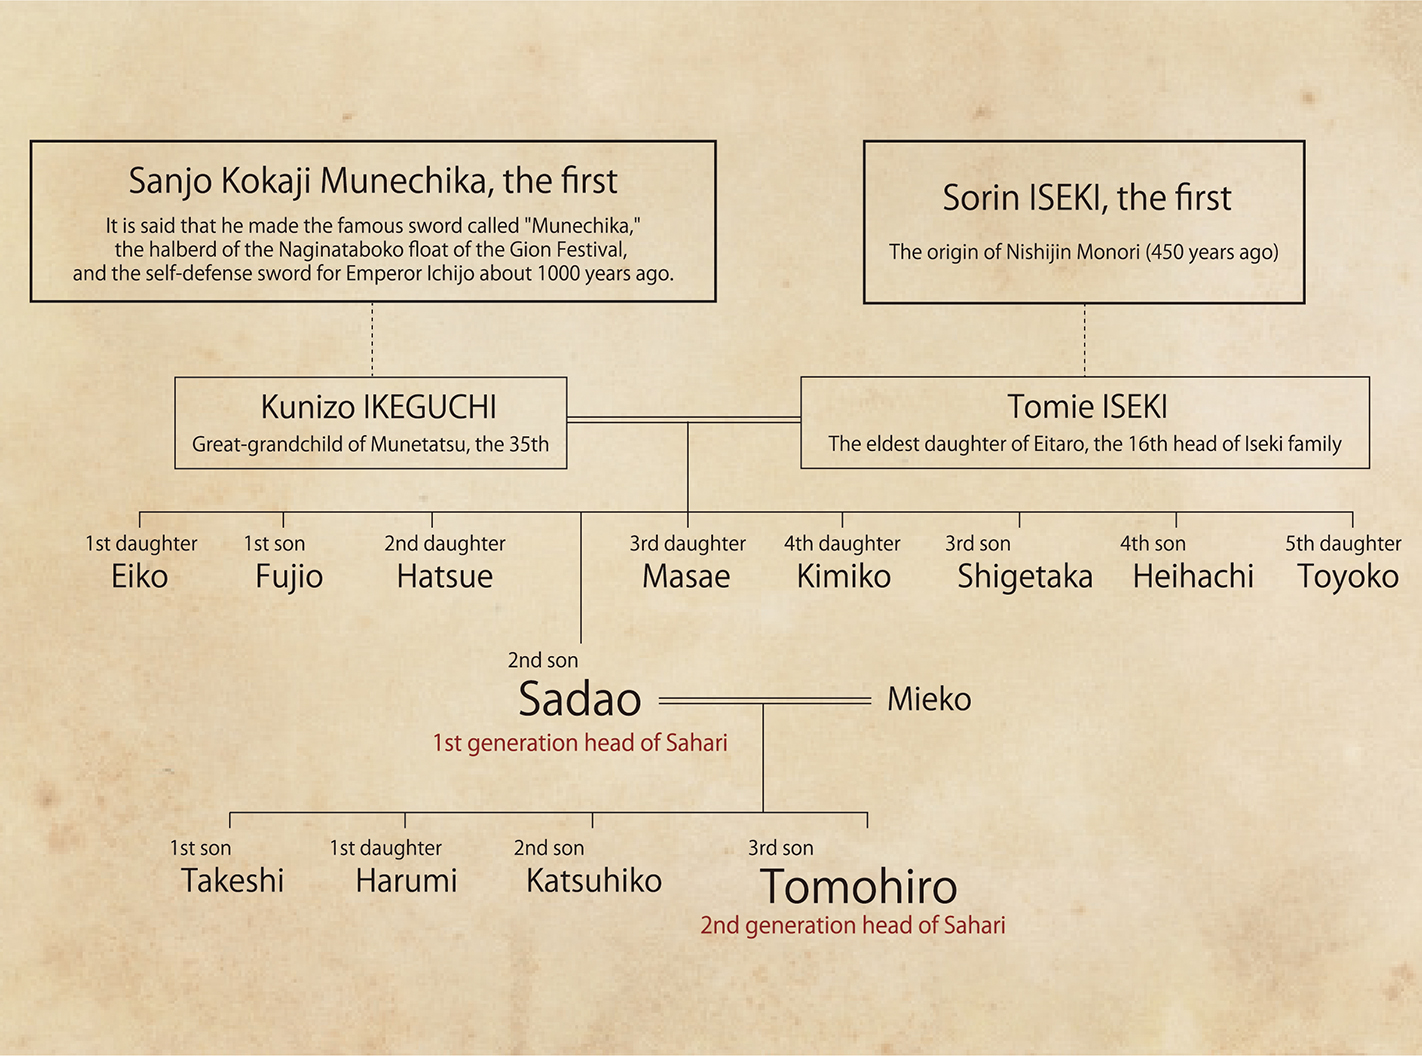 The Family Tree of the Ikeguchi family